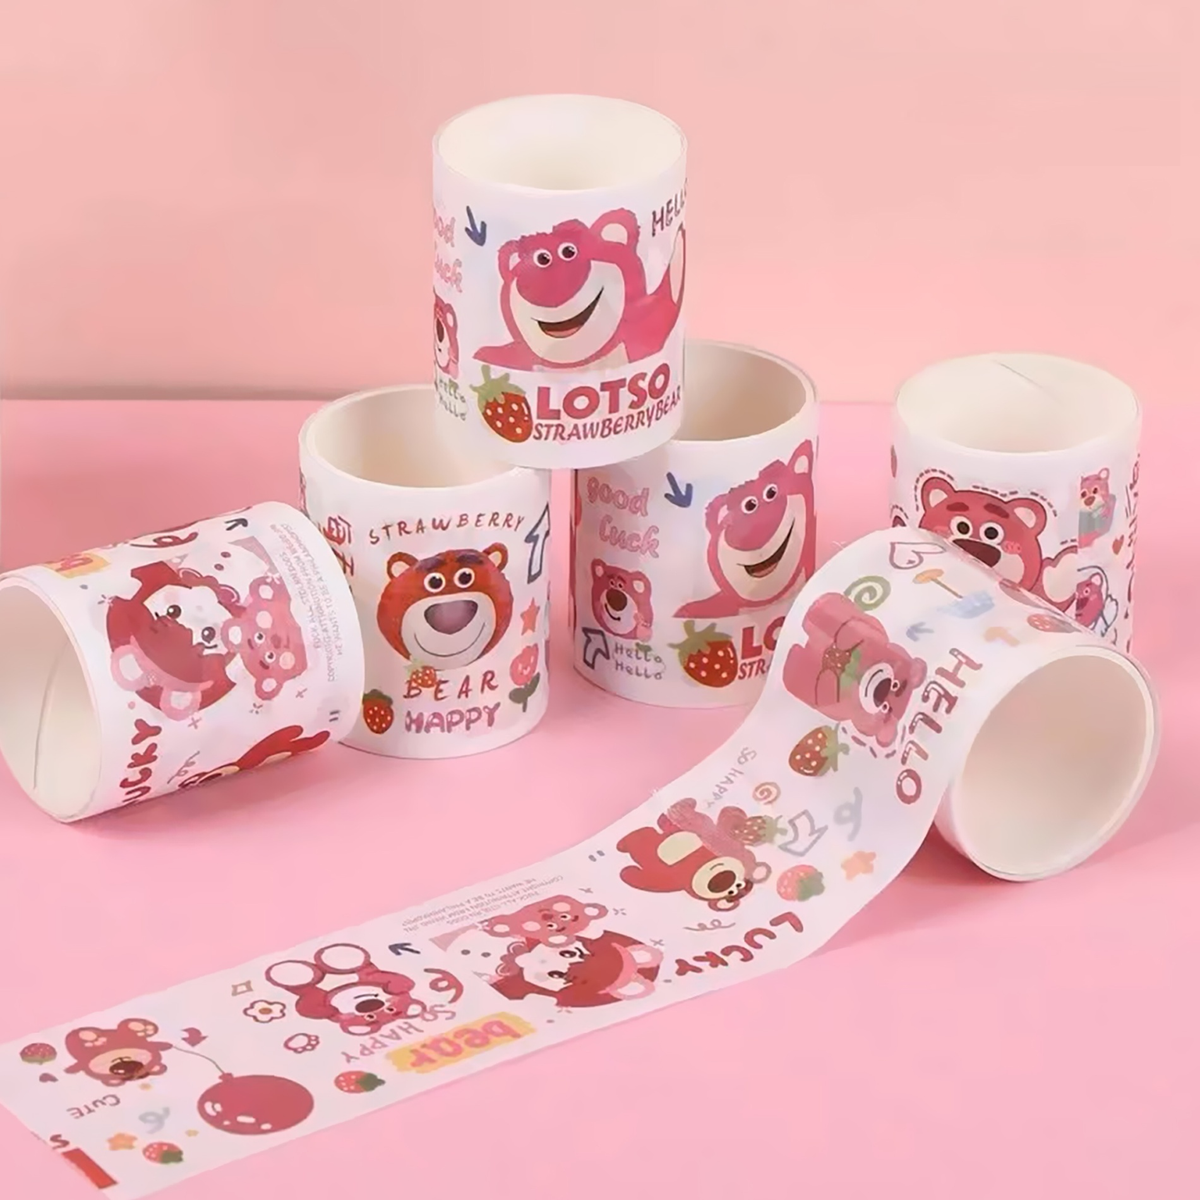 Lotso Strawberry Bear - Washi Tape